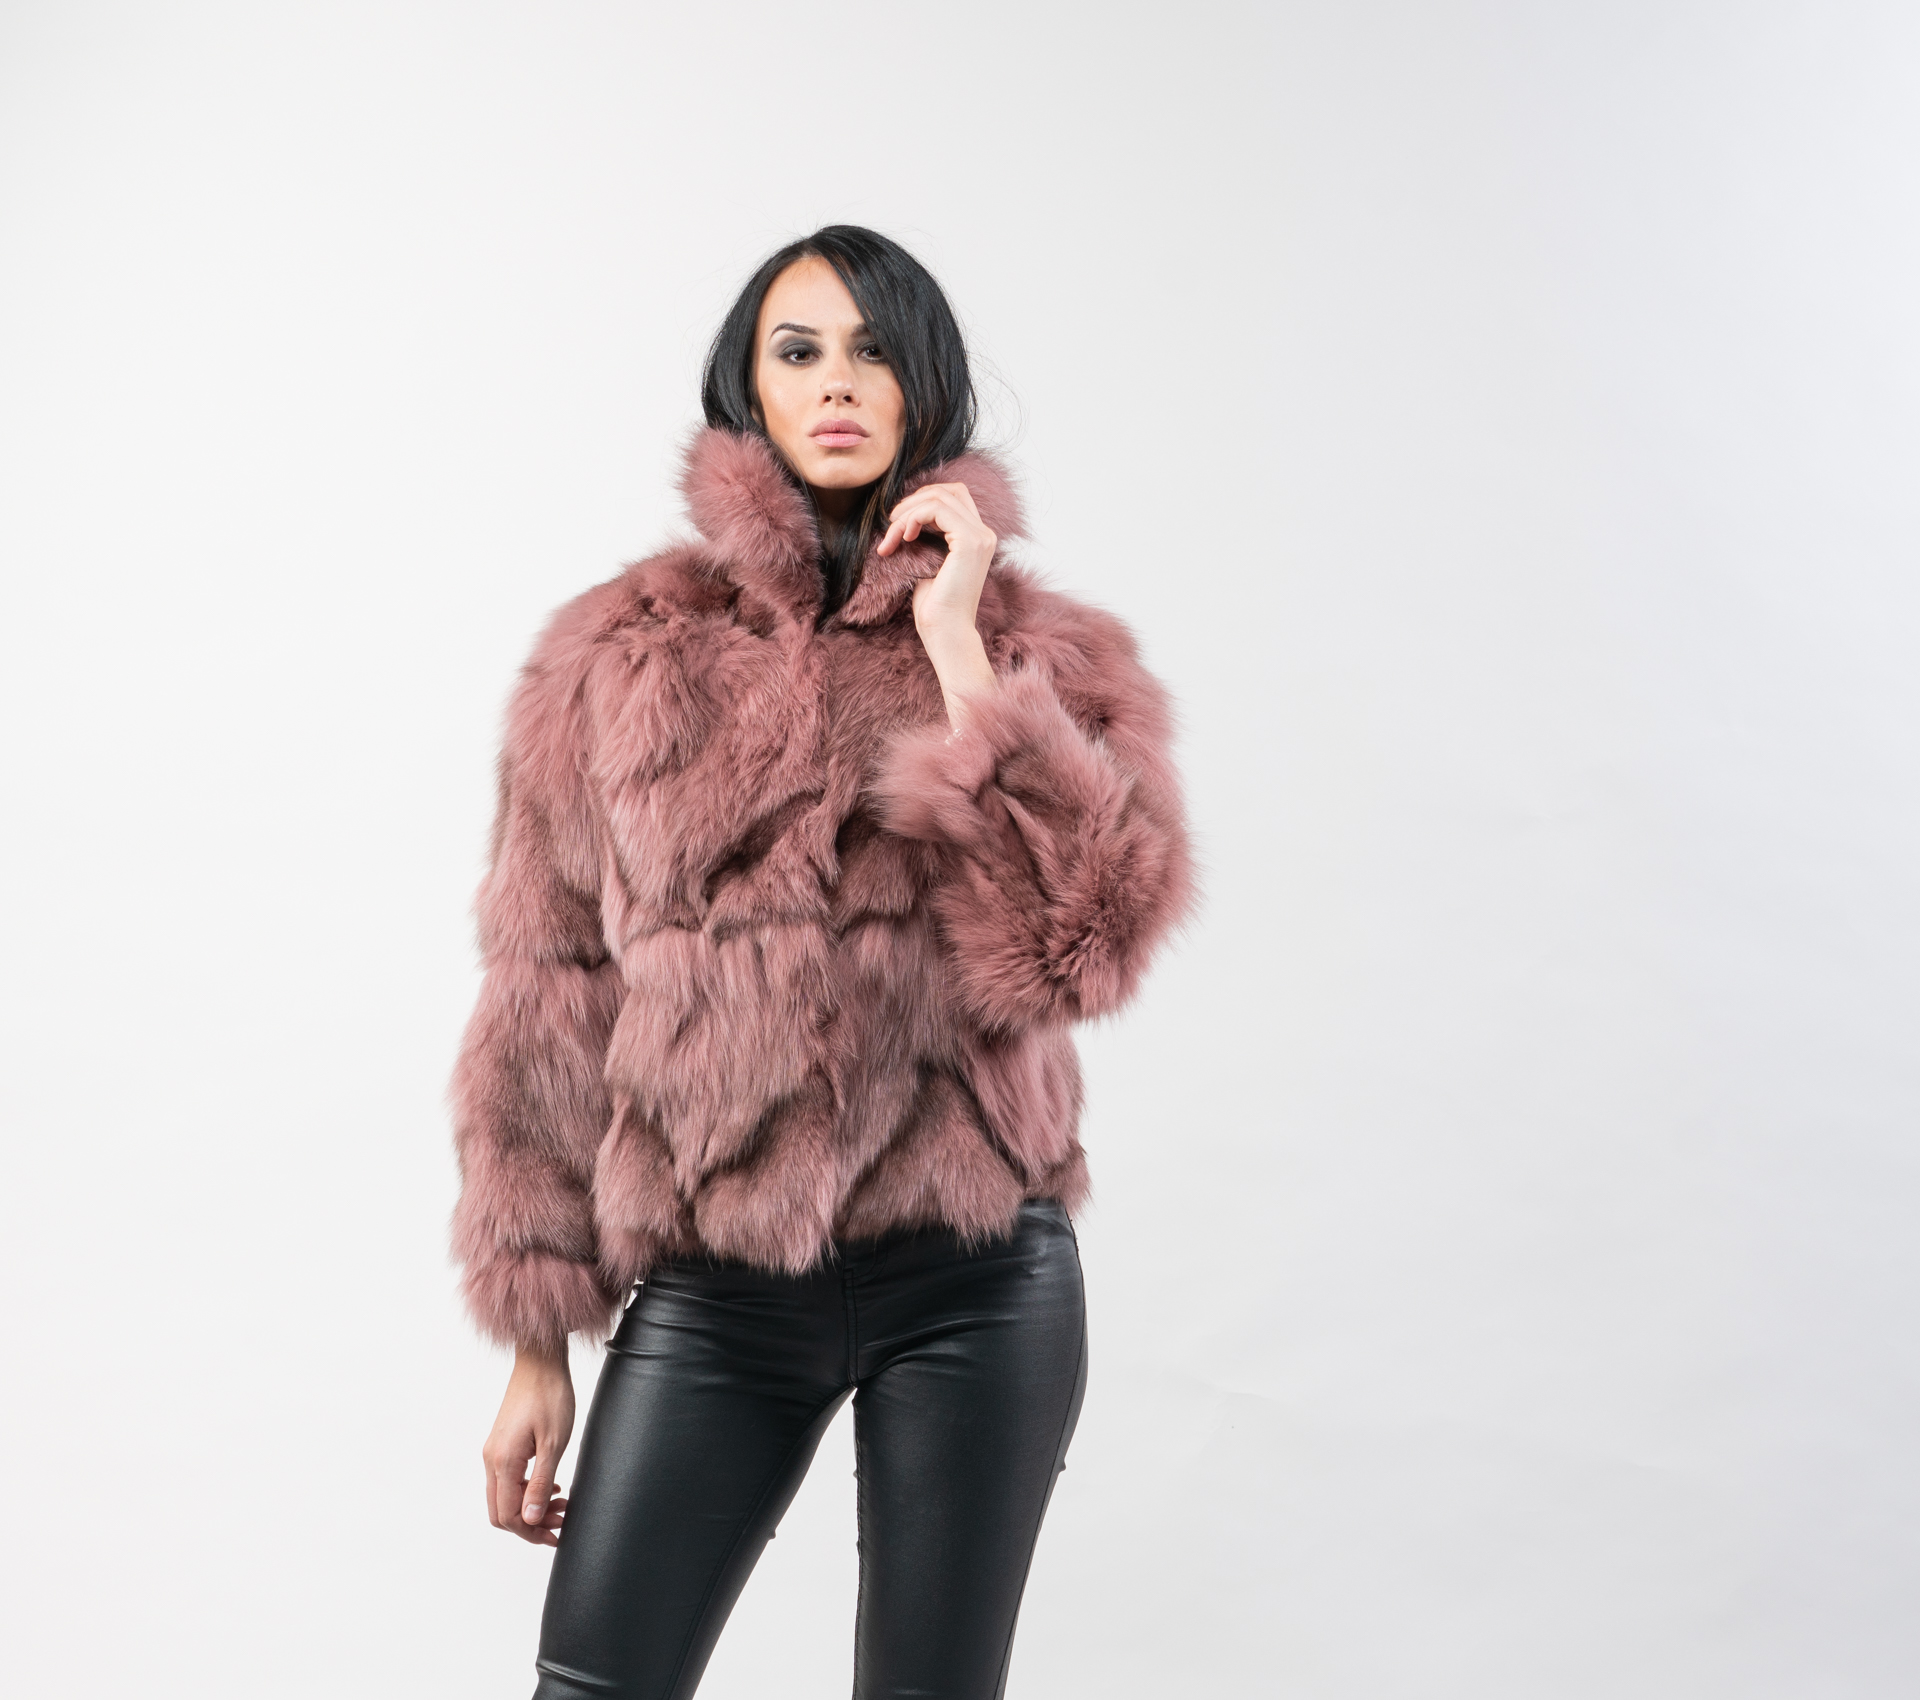 pink short fur jacket